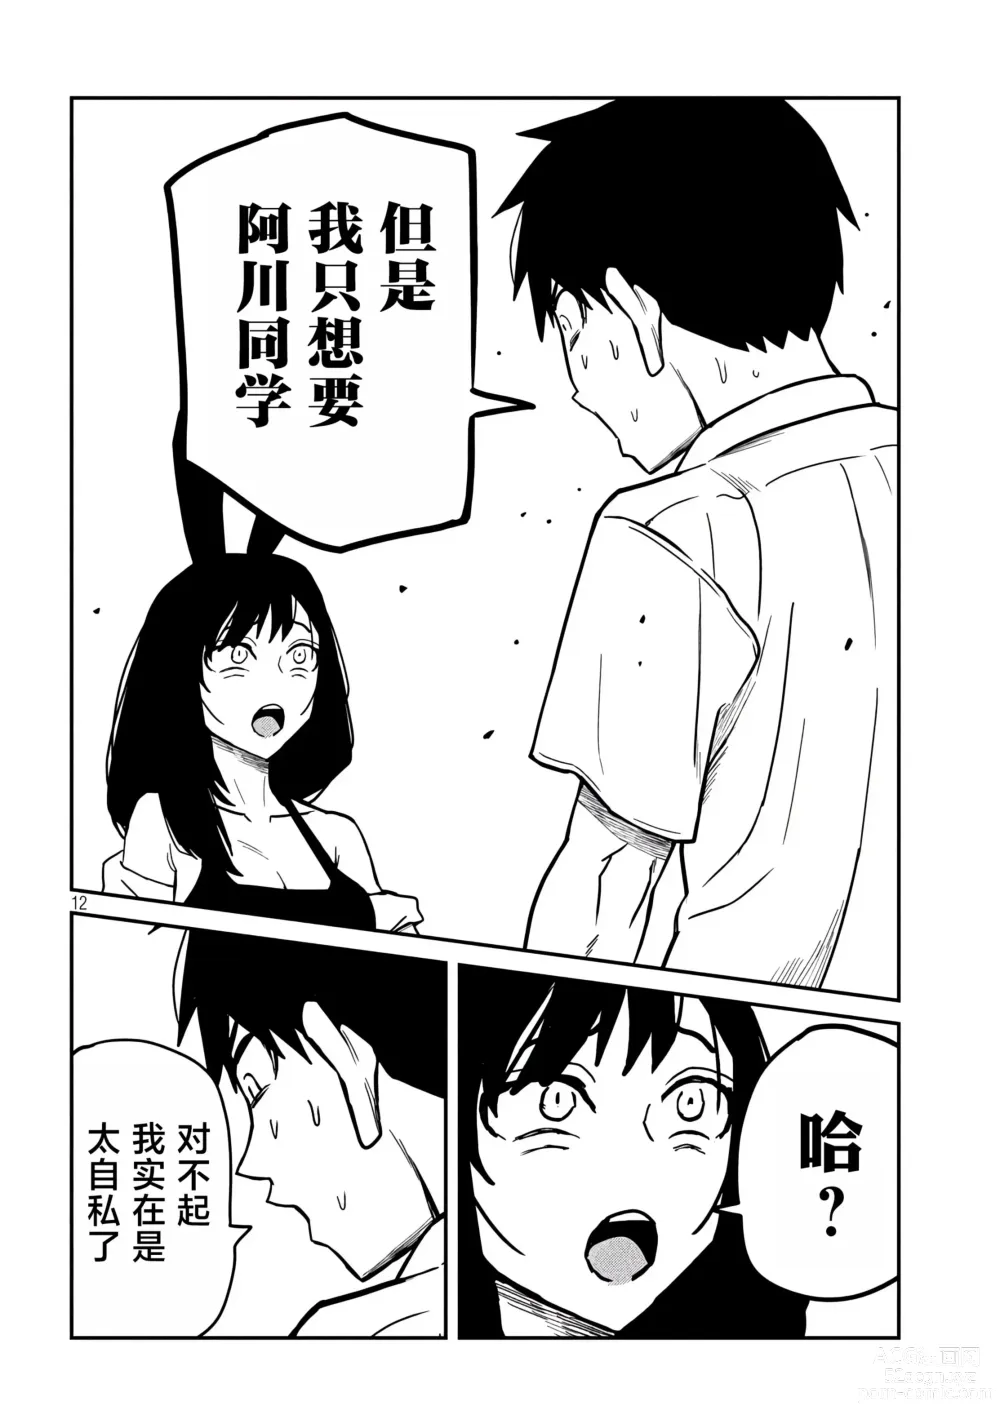 Page 532 of manga 喜欢来者不拒的你